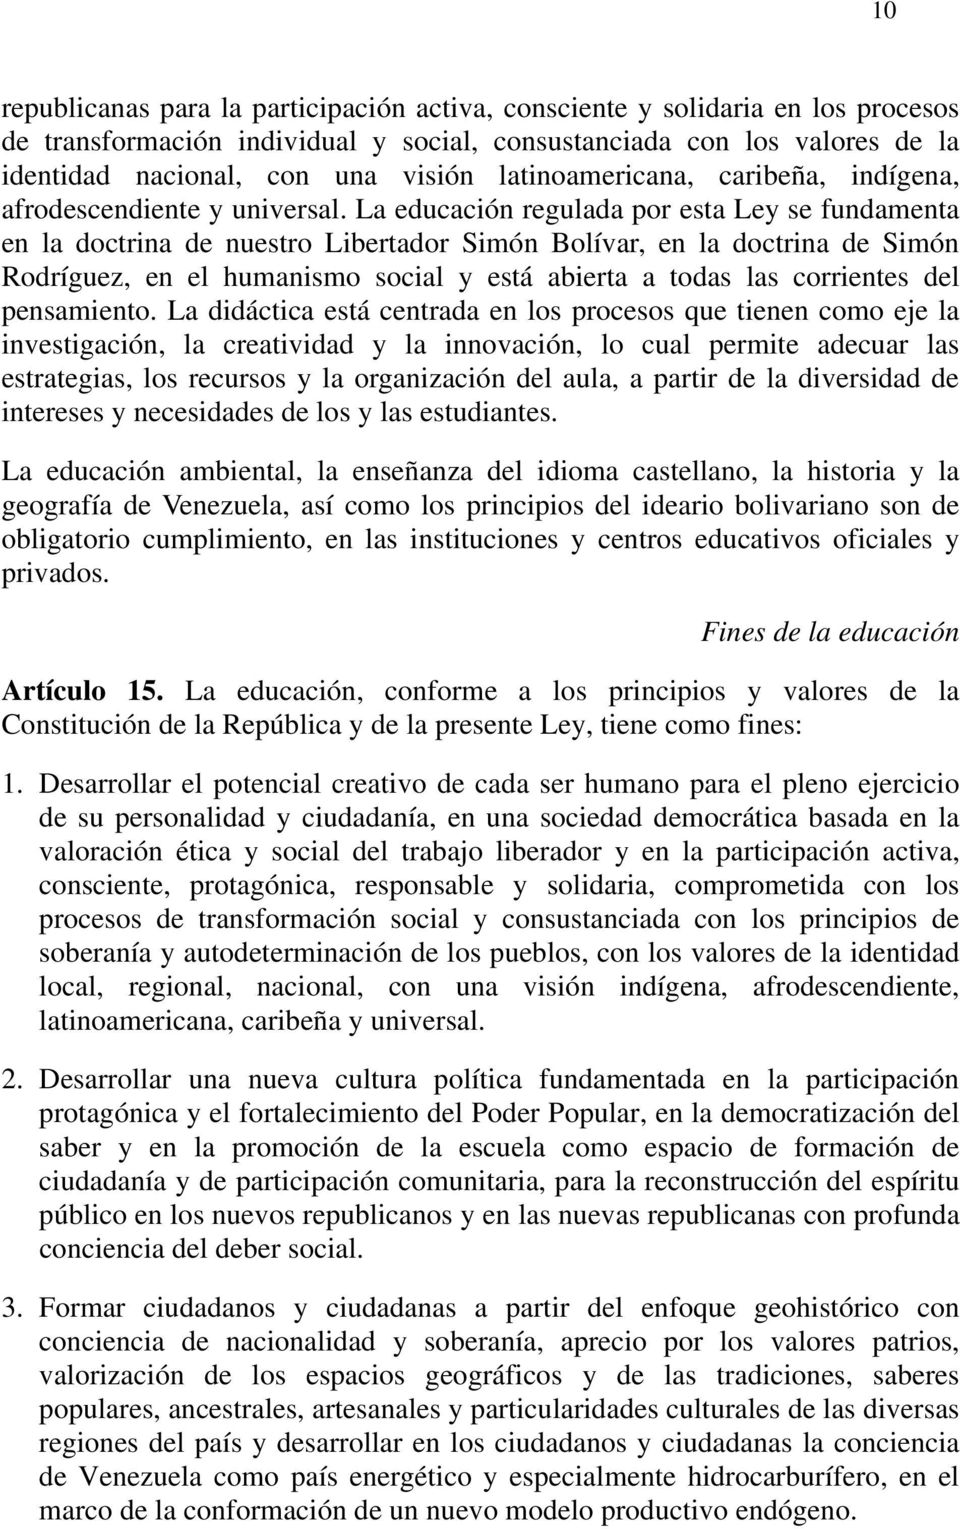 La educación regulada por esta Ley se fundamenta en la doctrina de nuestro Libertador Simón Bolívar, en la doctrina de Simón Rodríguez, en el humanismo social y está abierta a todas las corrientes